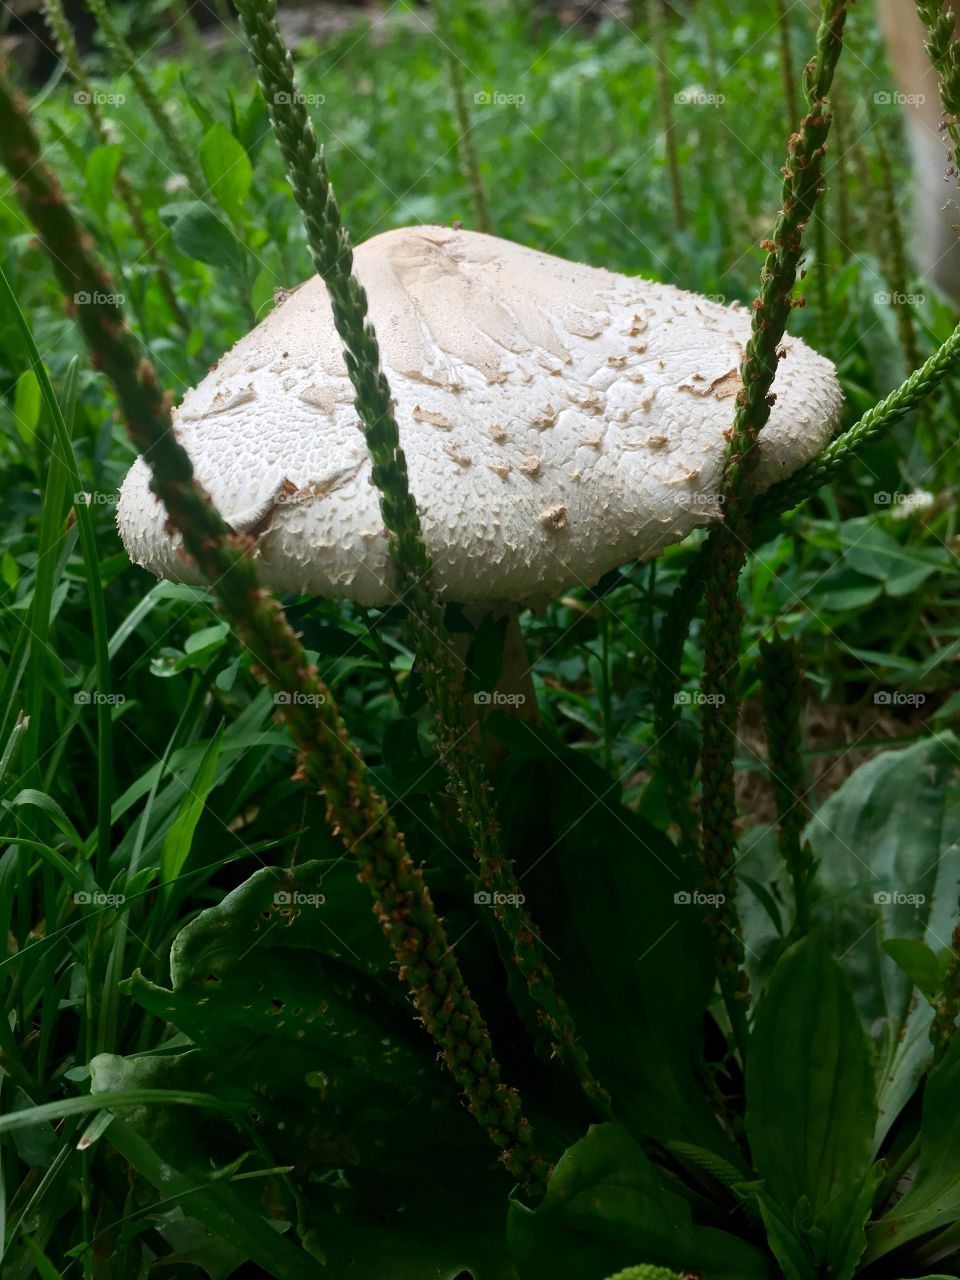 Fungus growth 